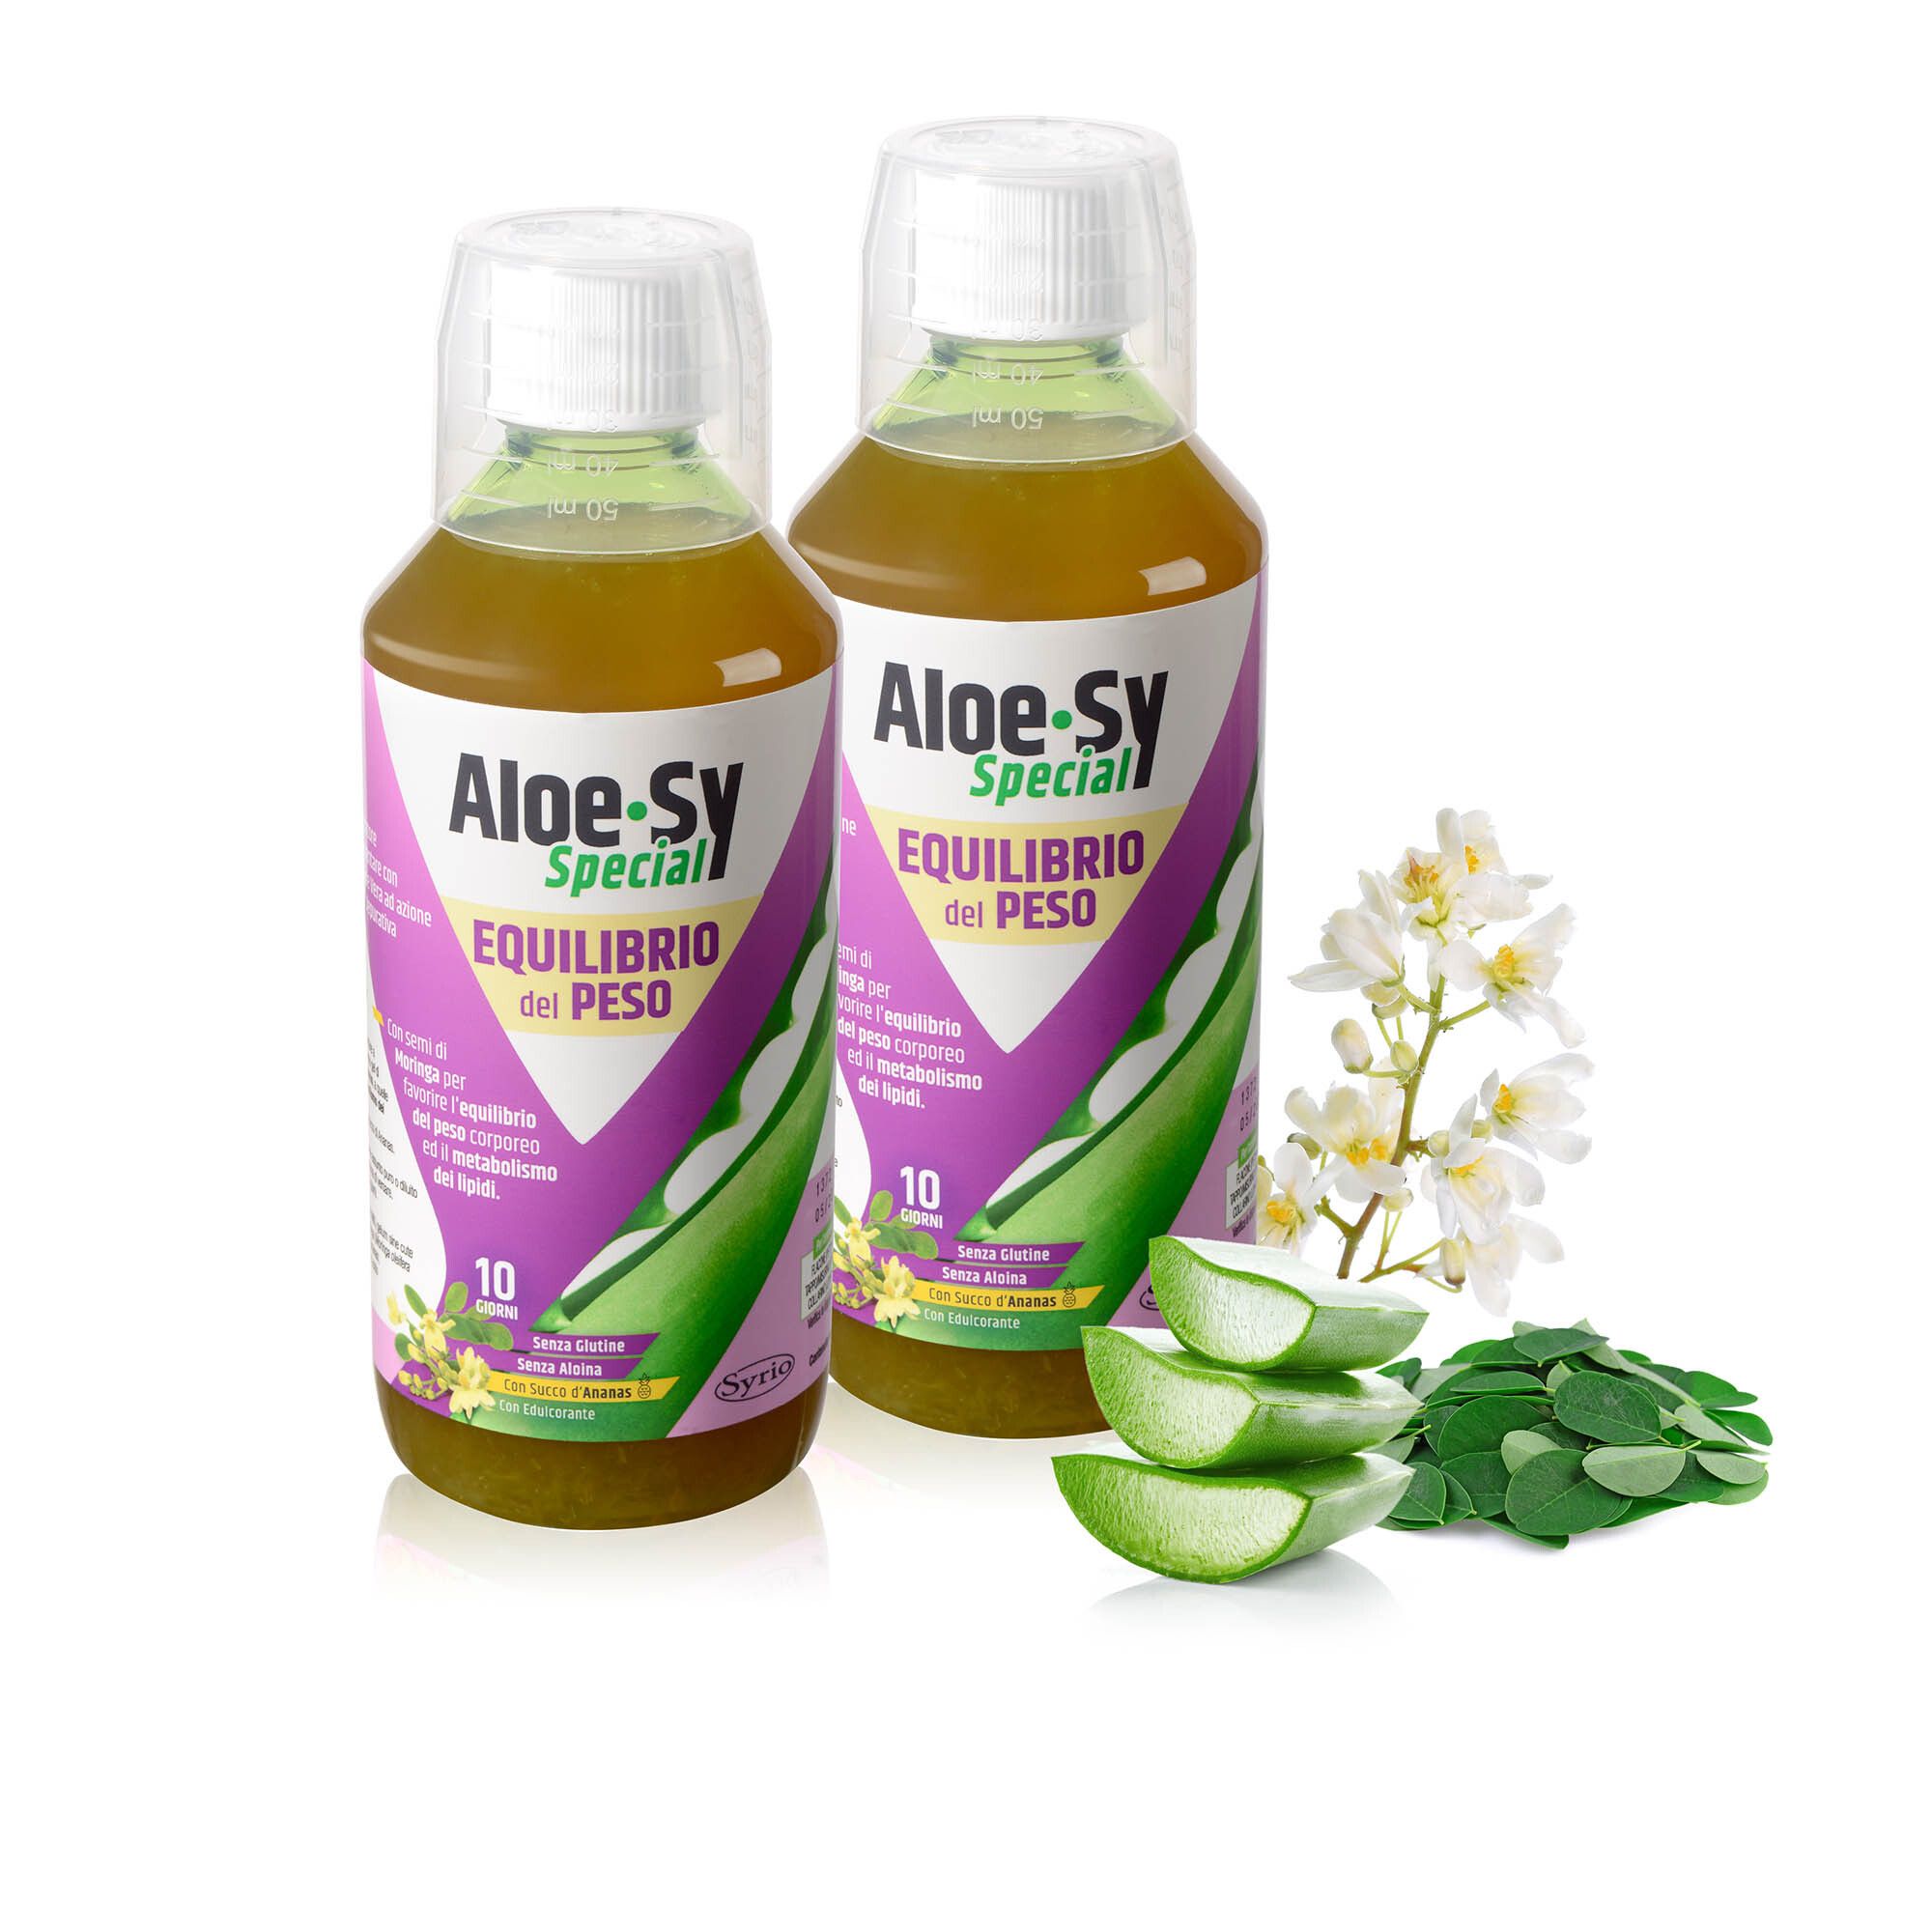 Aloe-Sy Special: 2 integratori per l'equilibrio del peso